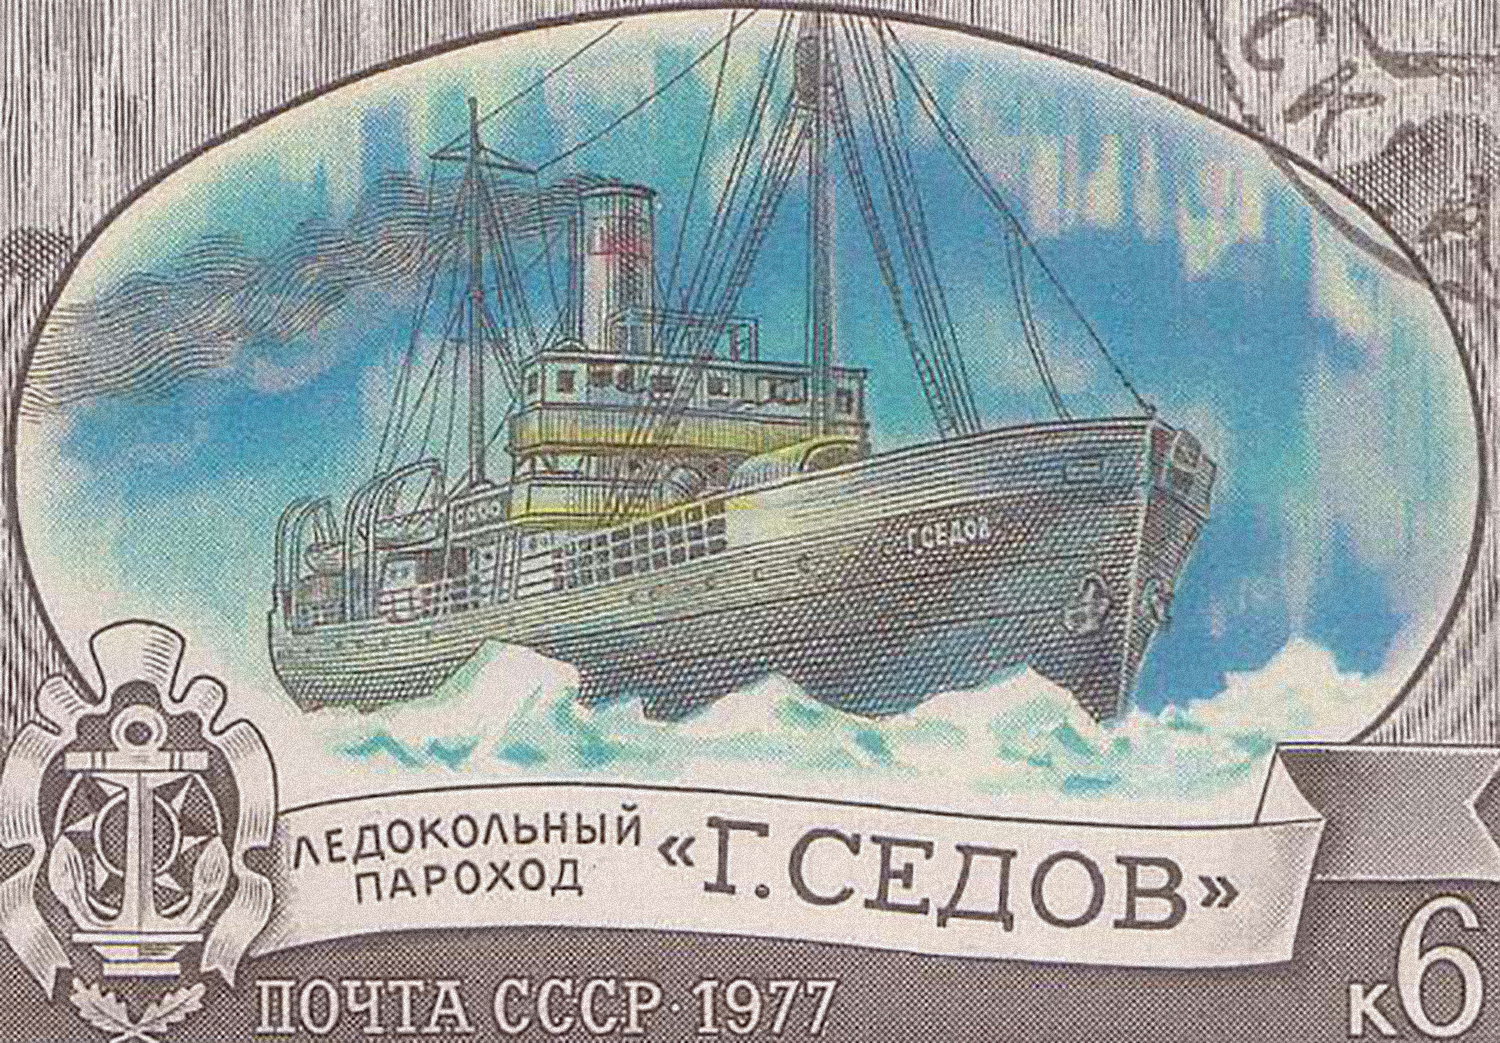 Героический ледокол в советское время изображали на марках. Фото: wikipedia.org